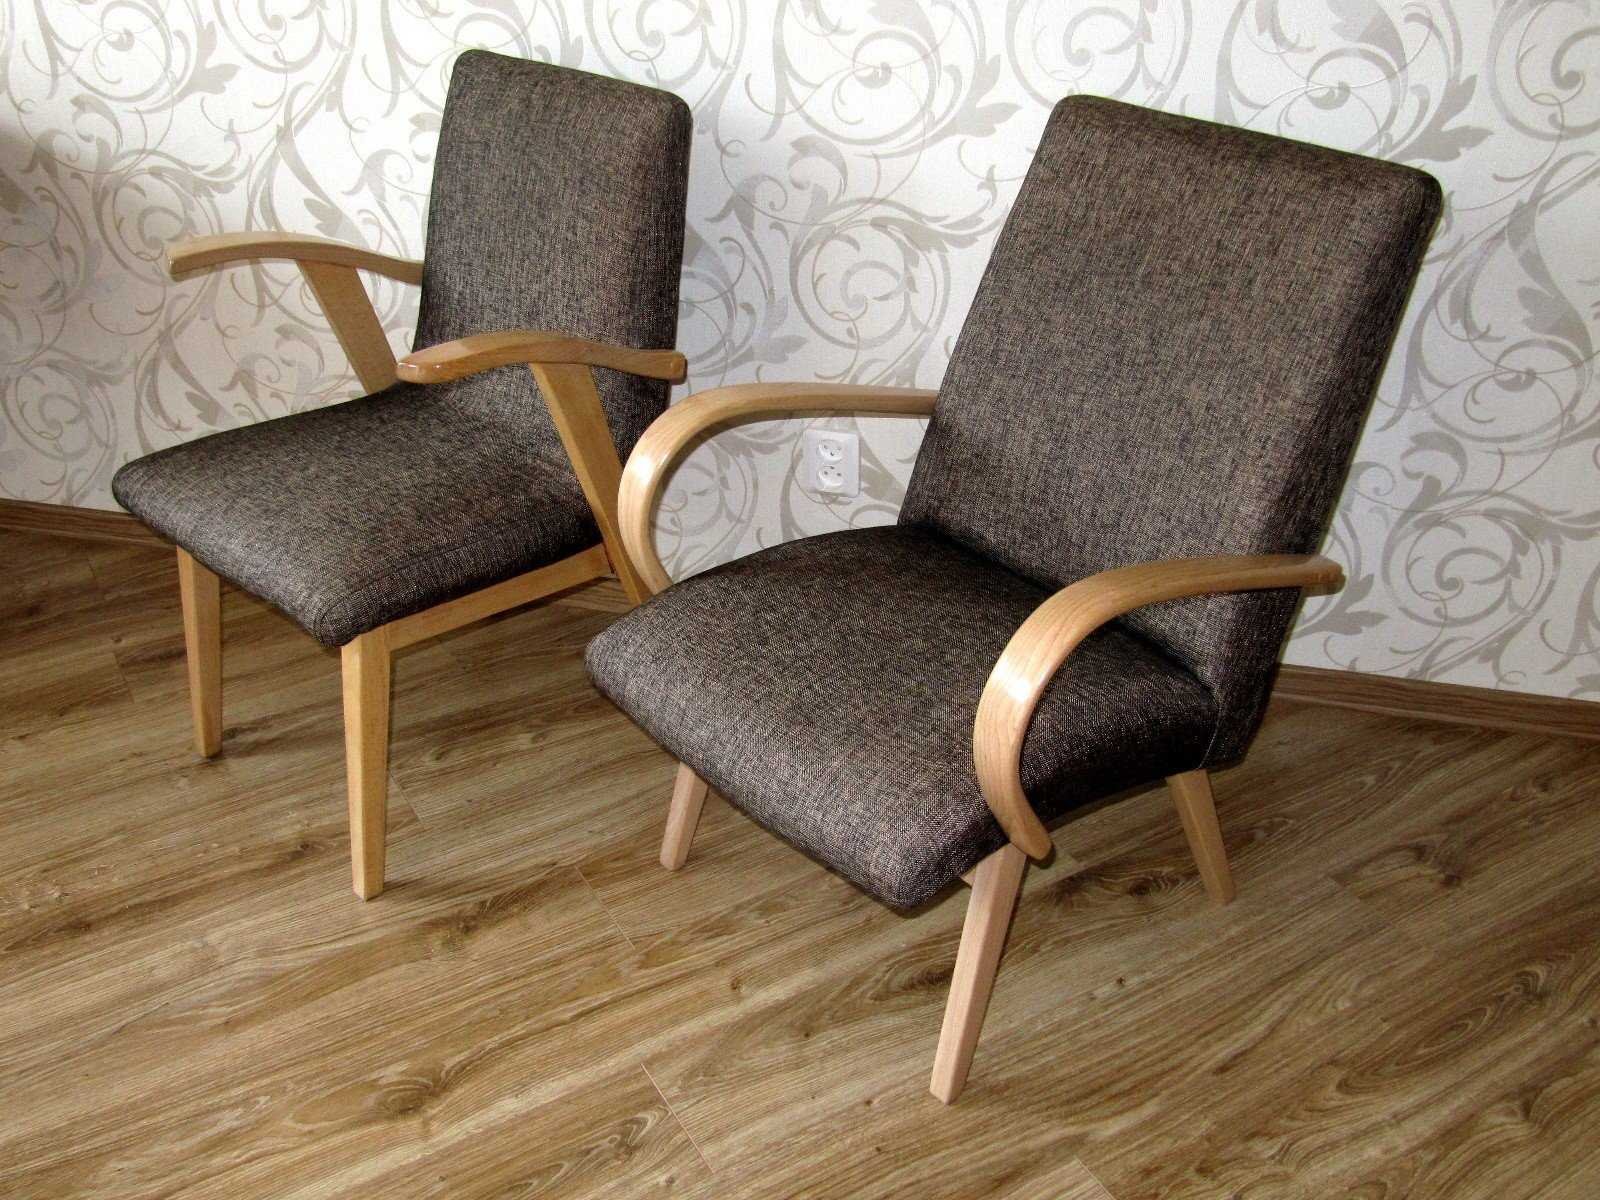 Обивка стула кожей. Кресло Миер Топольчаны. Старое советское кресло. Кресло с деревянными подлокотниками. Реставрируем старое кресло.